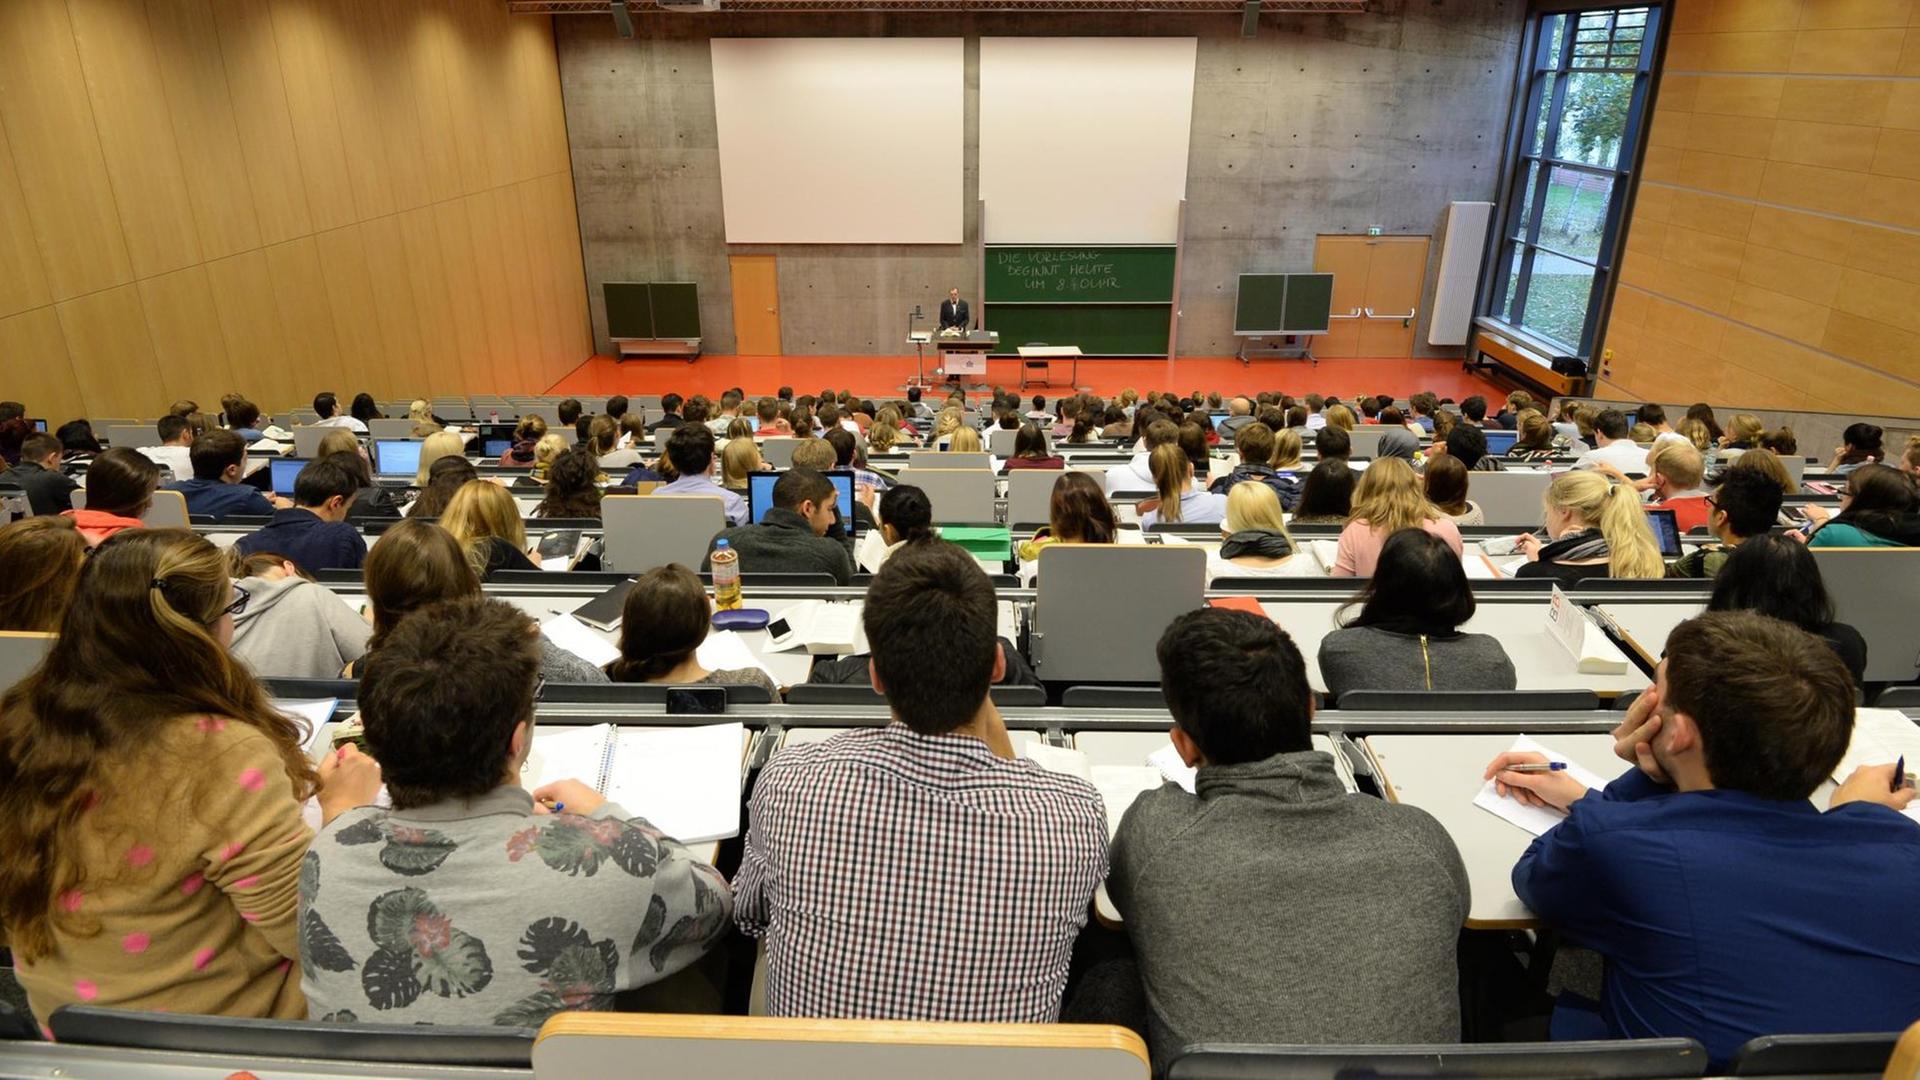 Studienanfänger sitzen am 14.10.2013 während ihrer ersten Juravorlesung in einem Hörsaal der Juristischen Fakultät der Universität Potsdam (Brandenburg).